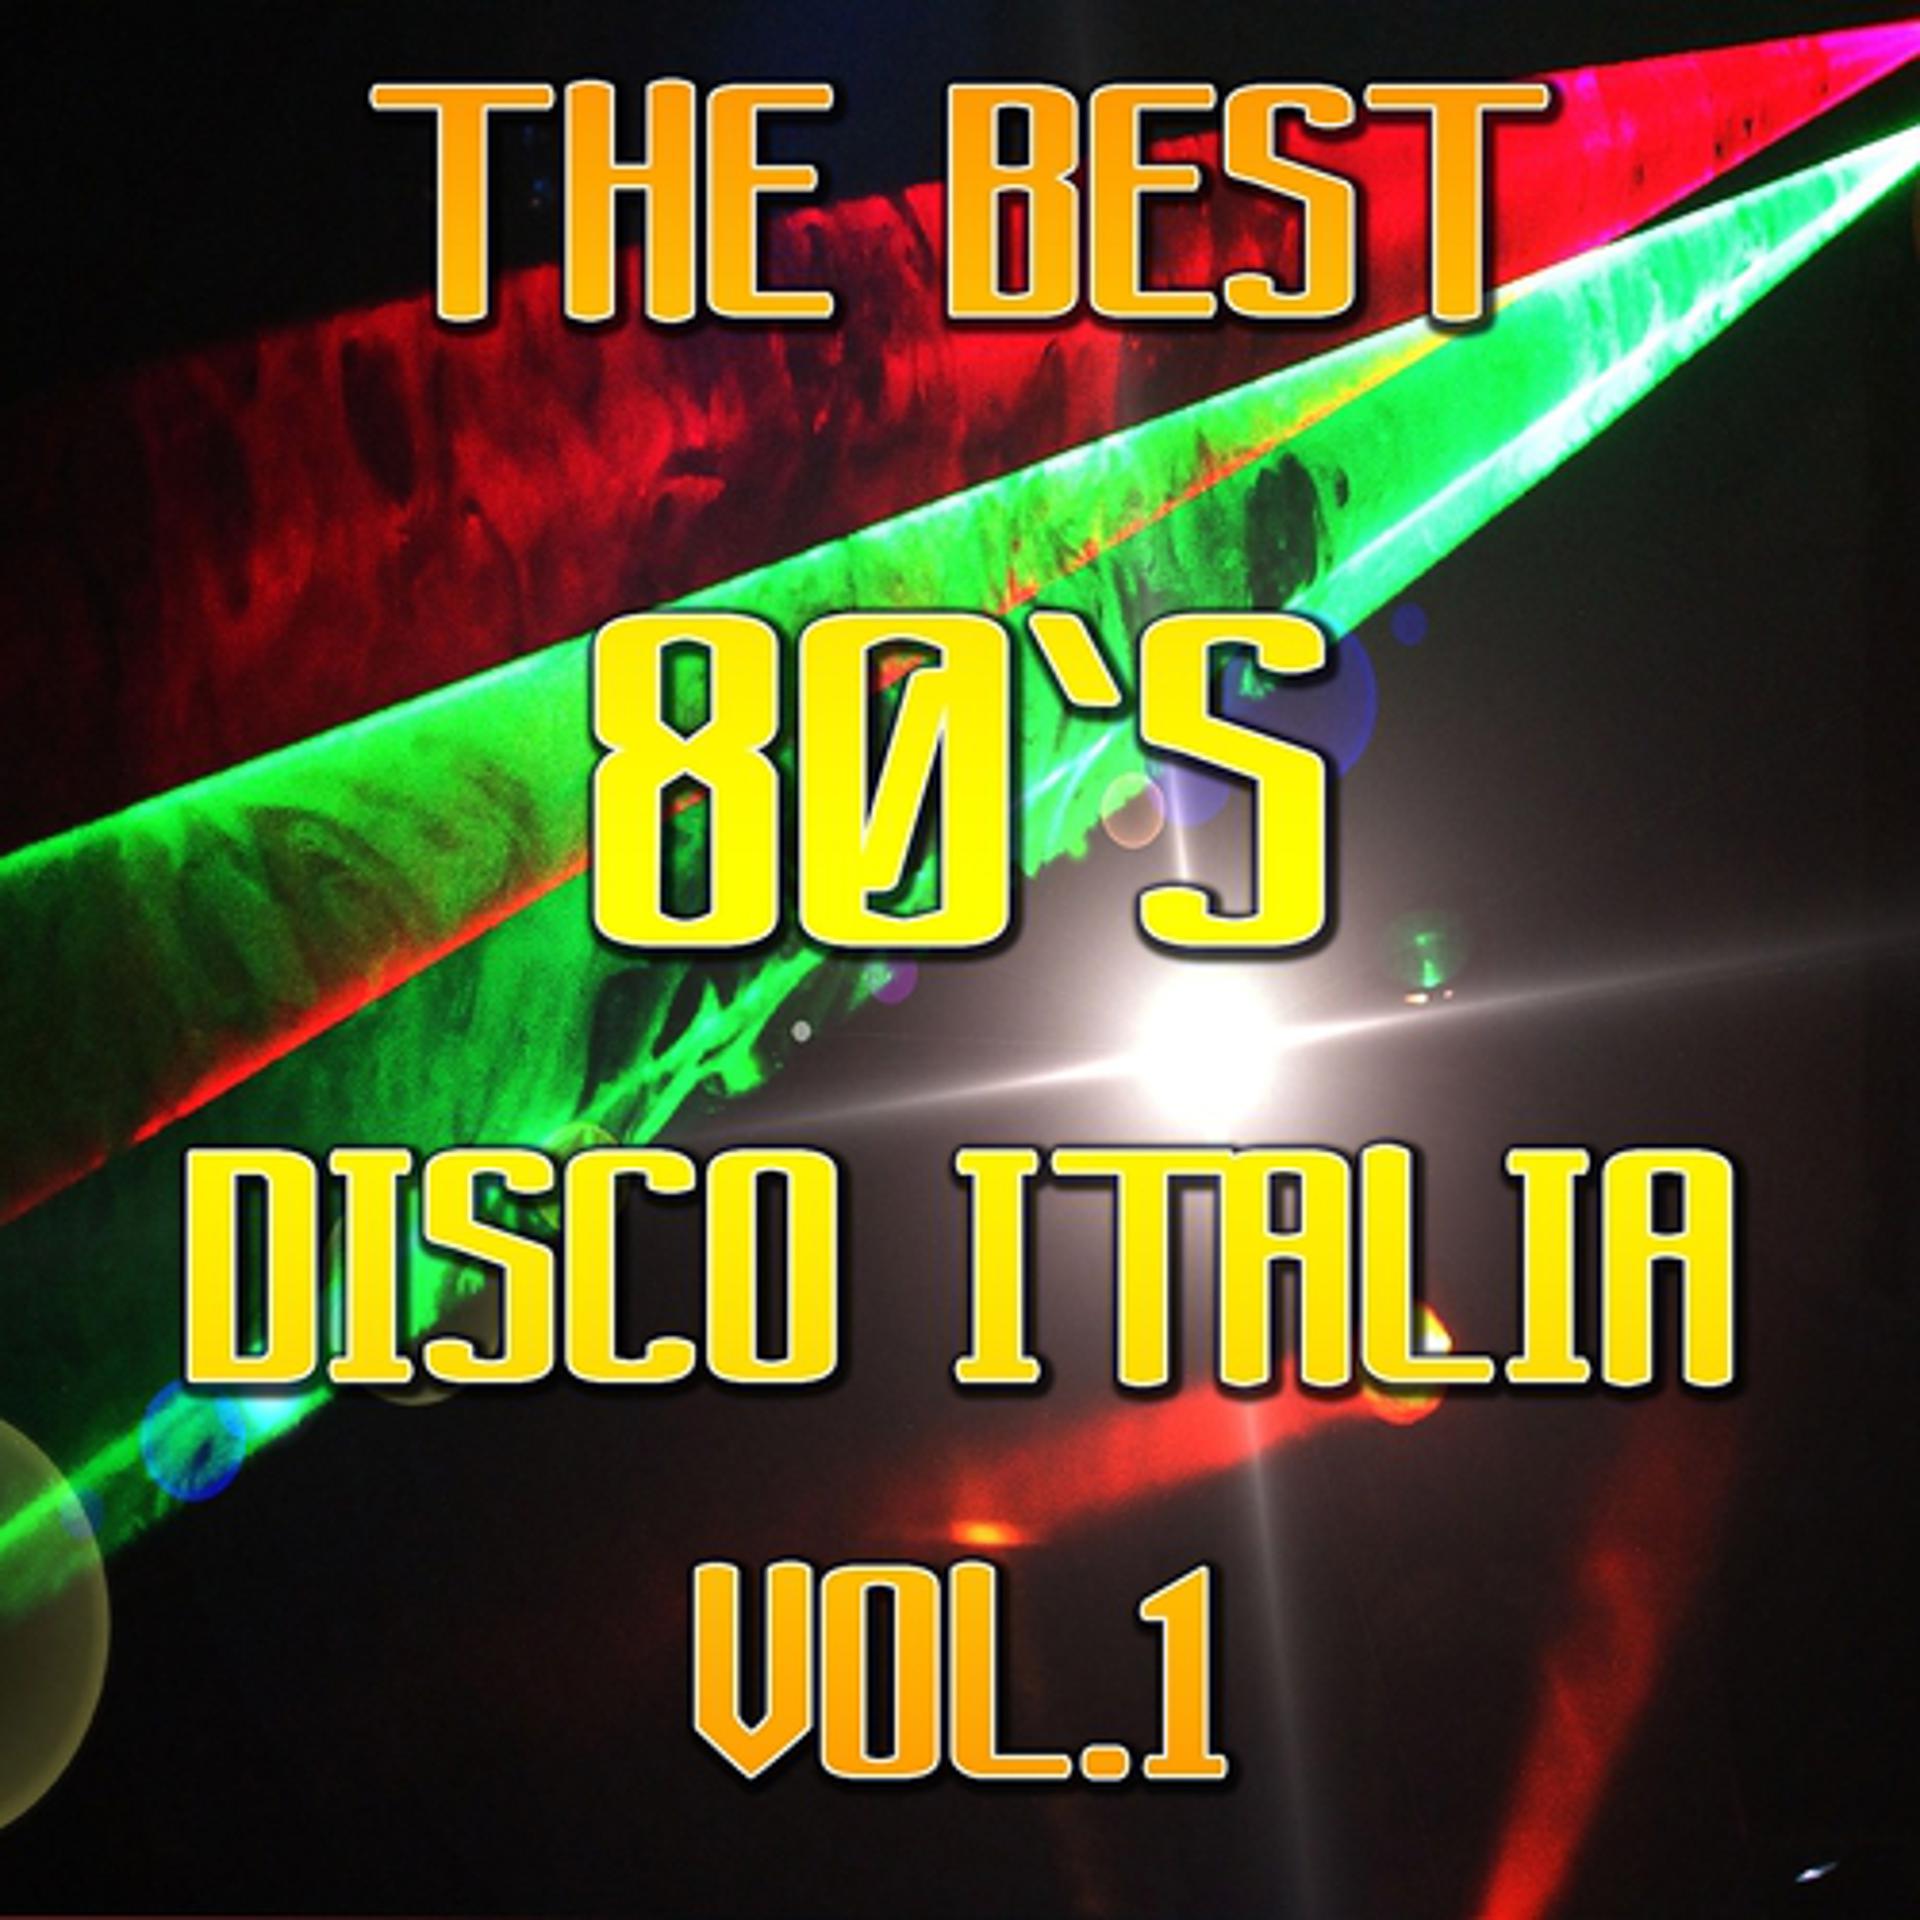 Итальянский диско слушать. Диско Италия 80. The best Disco 80. Disco Fever. Диско, Италия, плейлист Дальнобой..